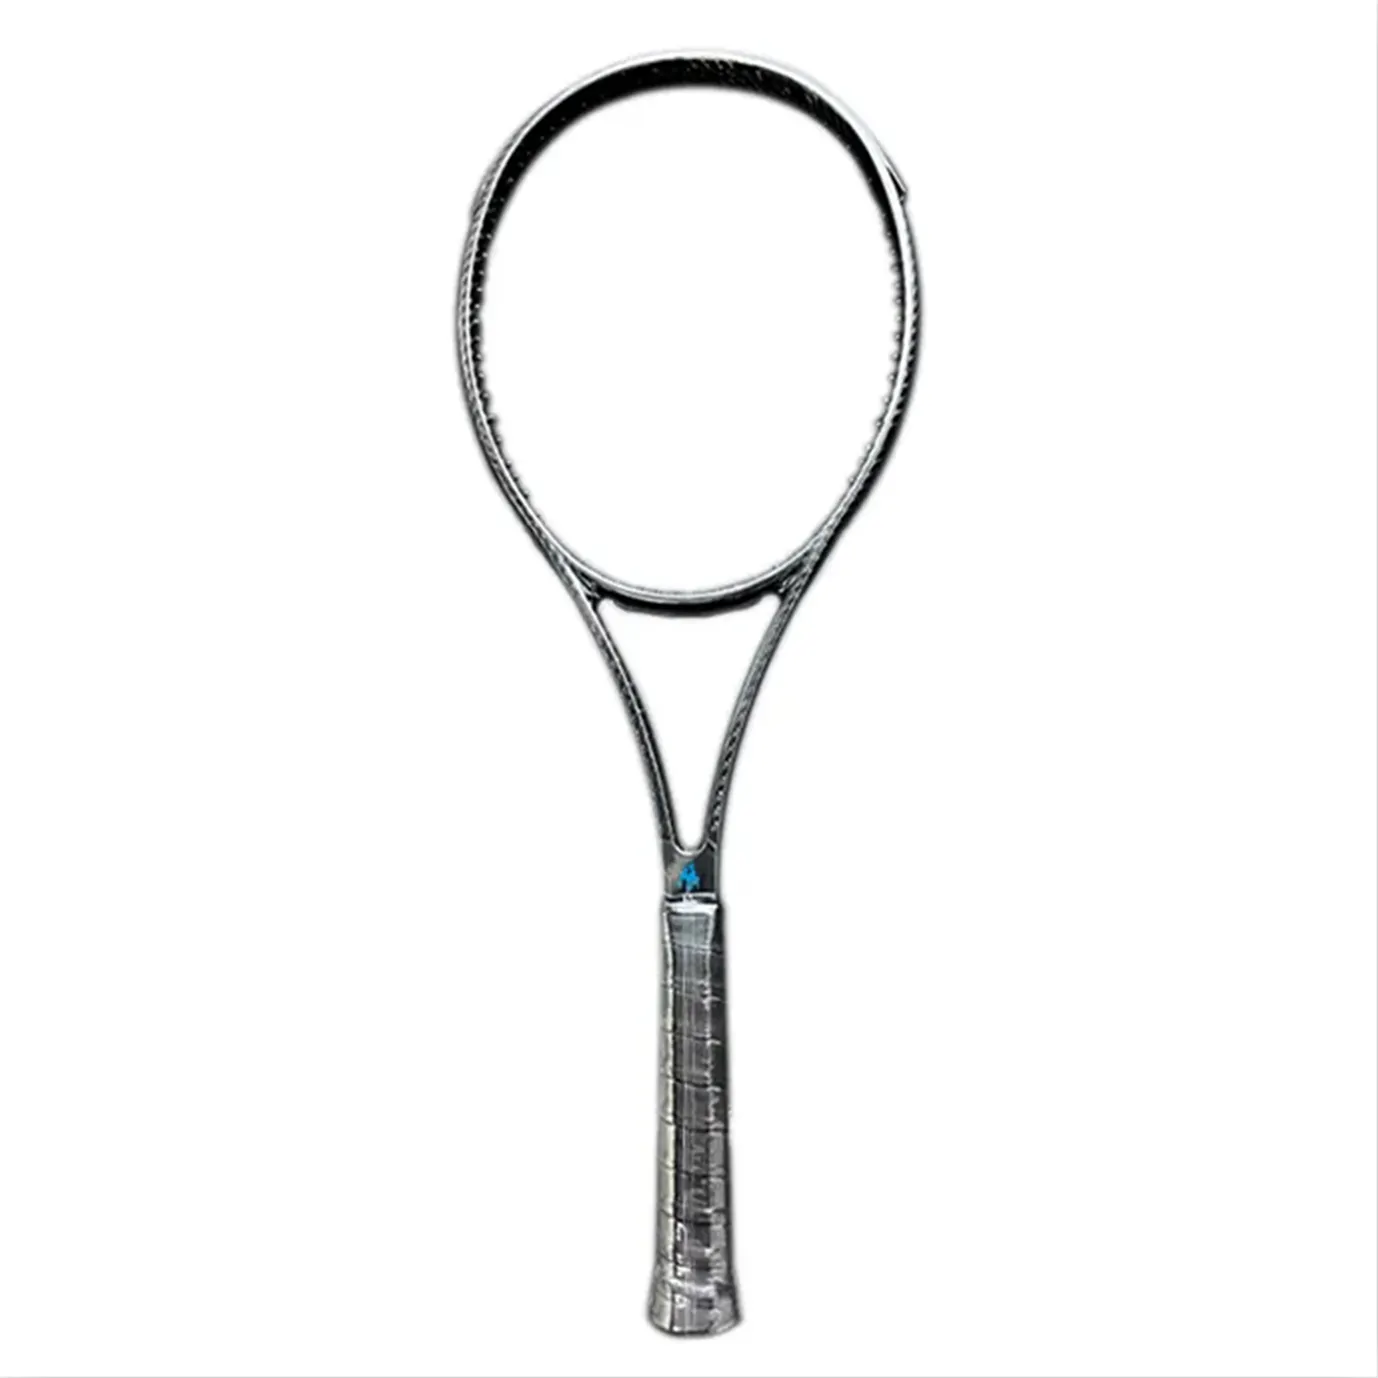 Benutzer definiertes Logo leichte volle 3K Carbon Tennis schläger profession elle Schläger klinge 98